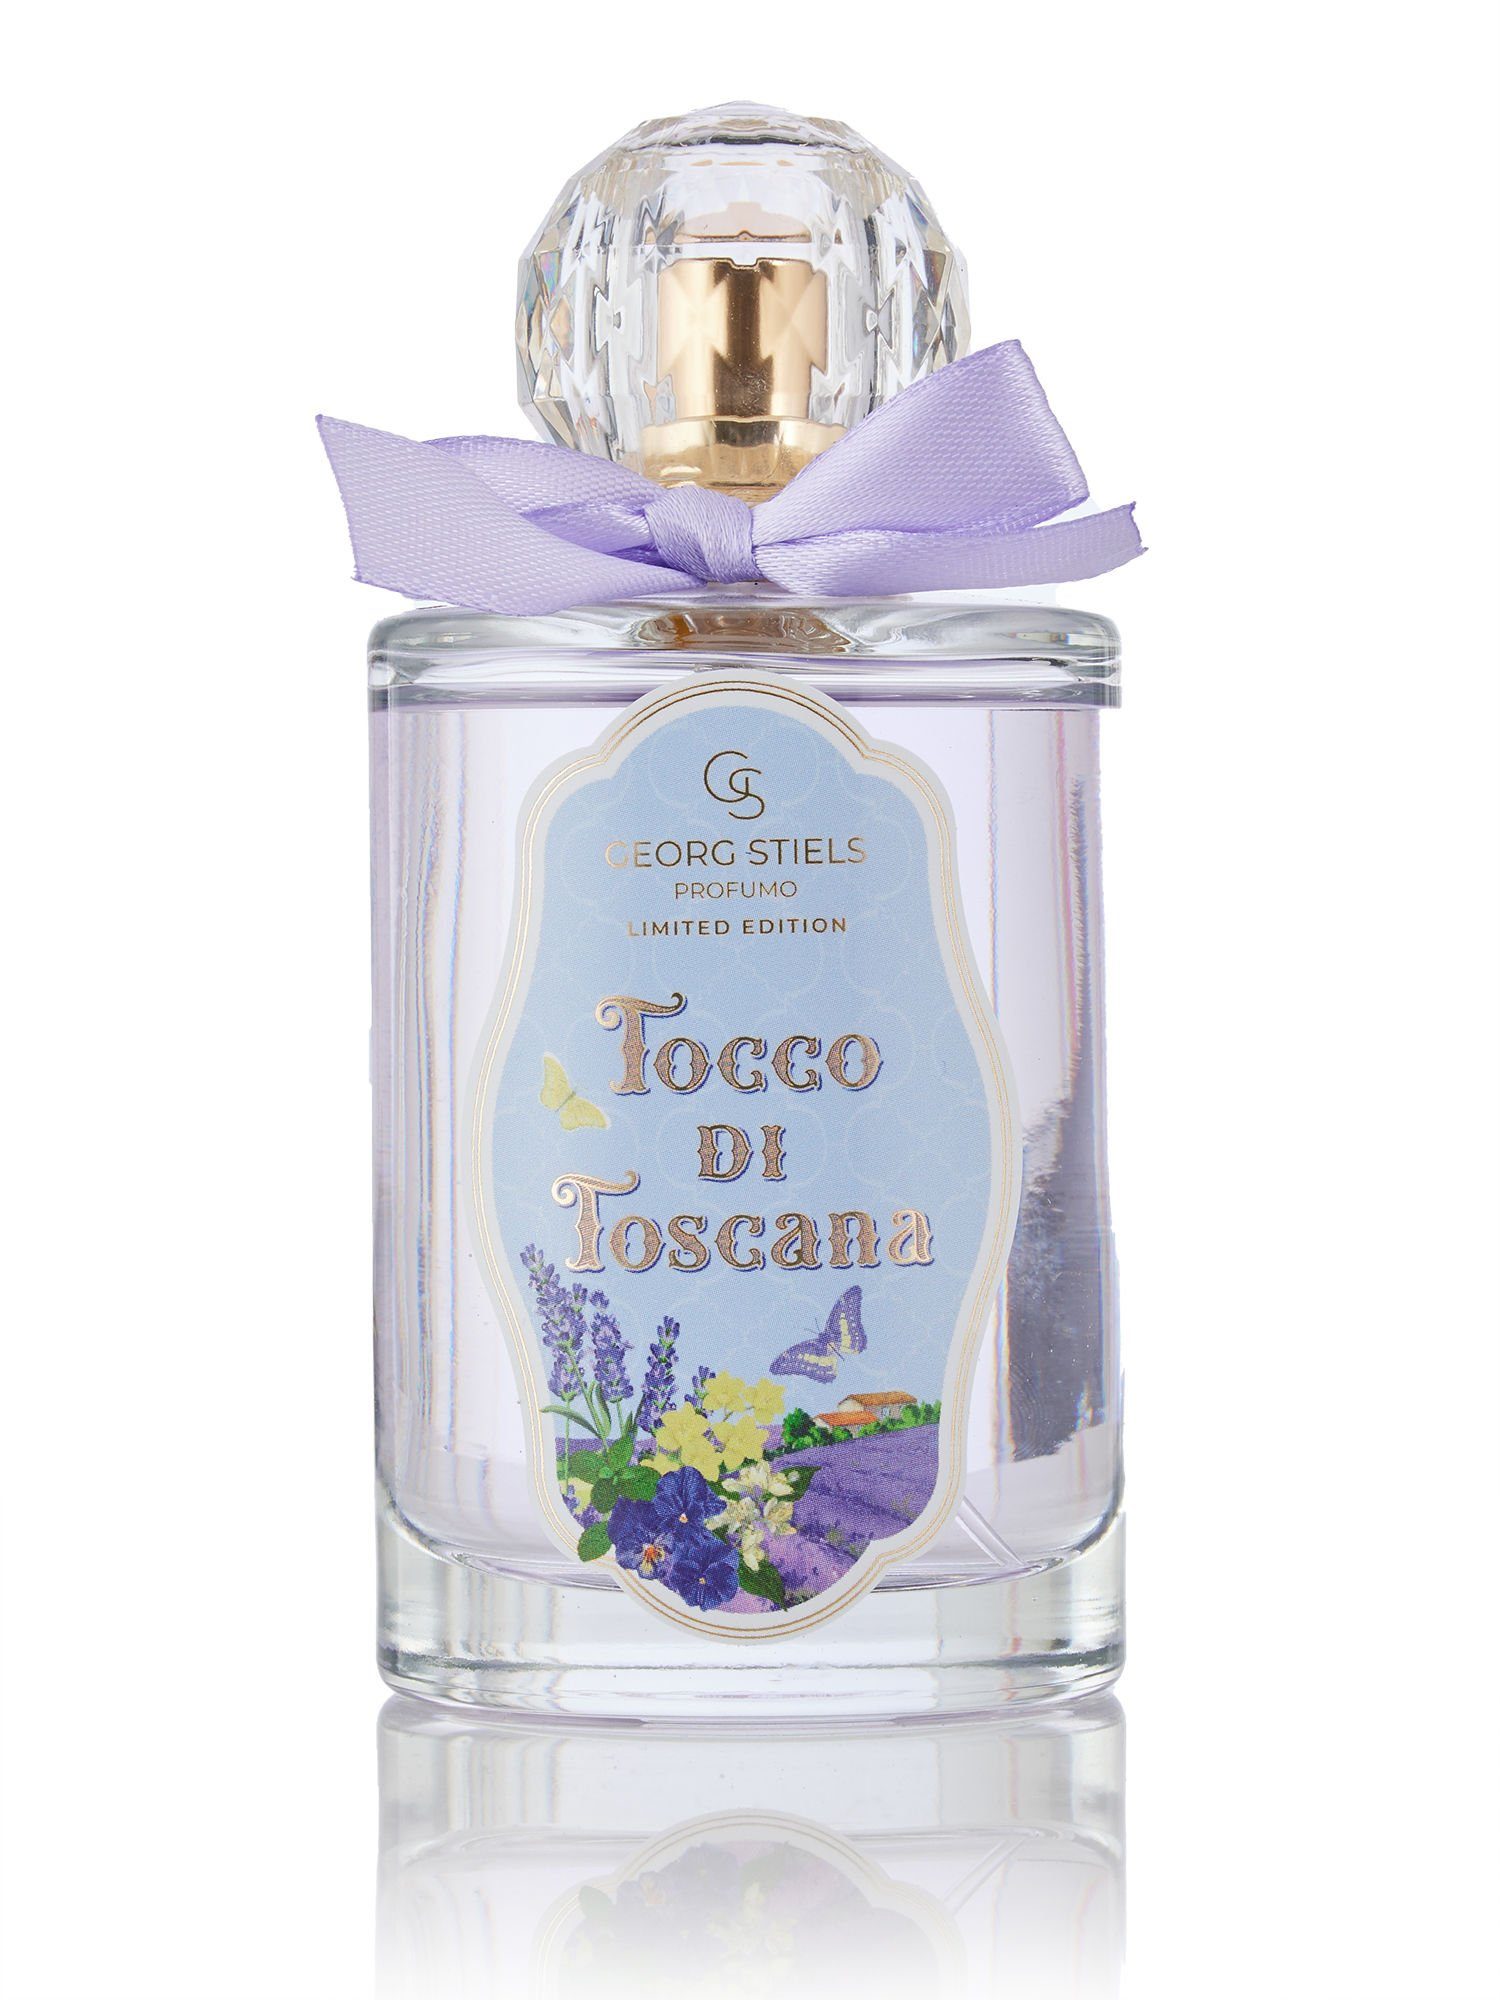 "Tocco Limited - Saison de Lavendels des Duftnoten Stiels Sommerduft di Parfum Georg mit 2-tlg., der Eau Toscana" Edition,